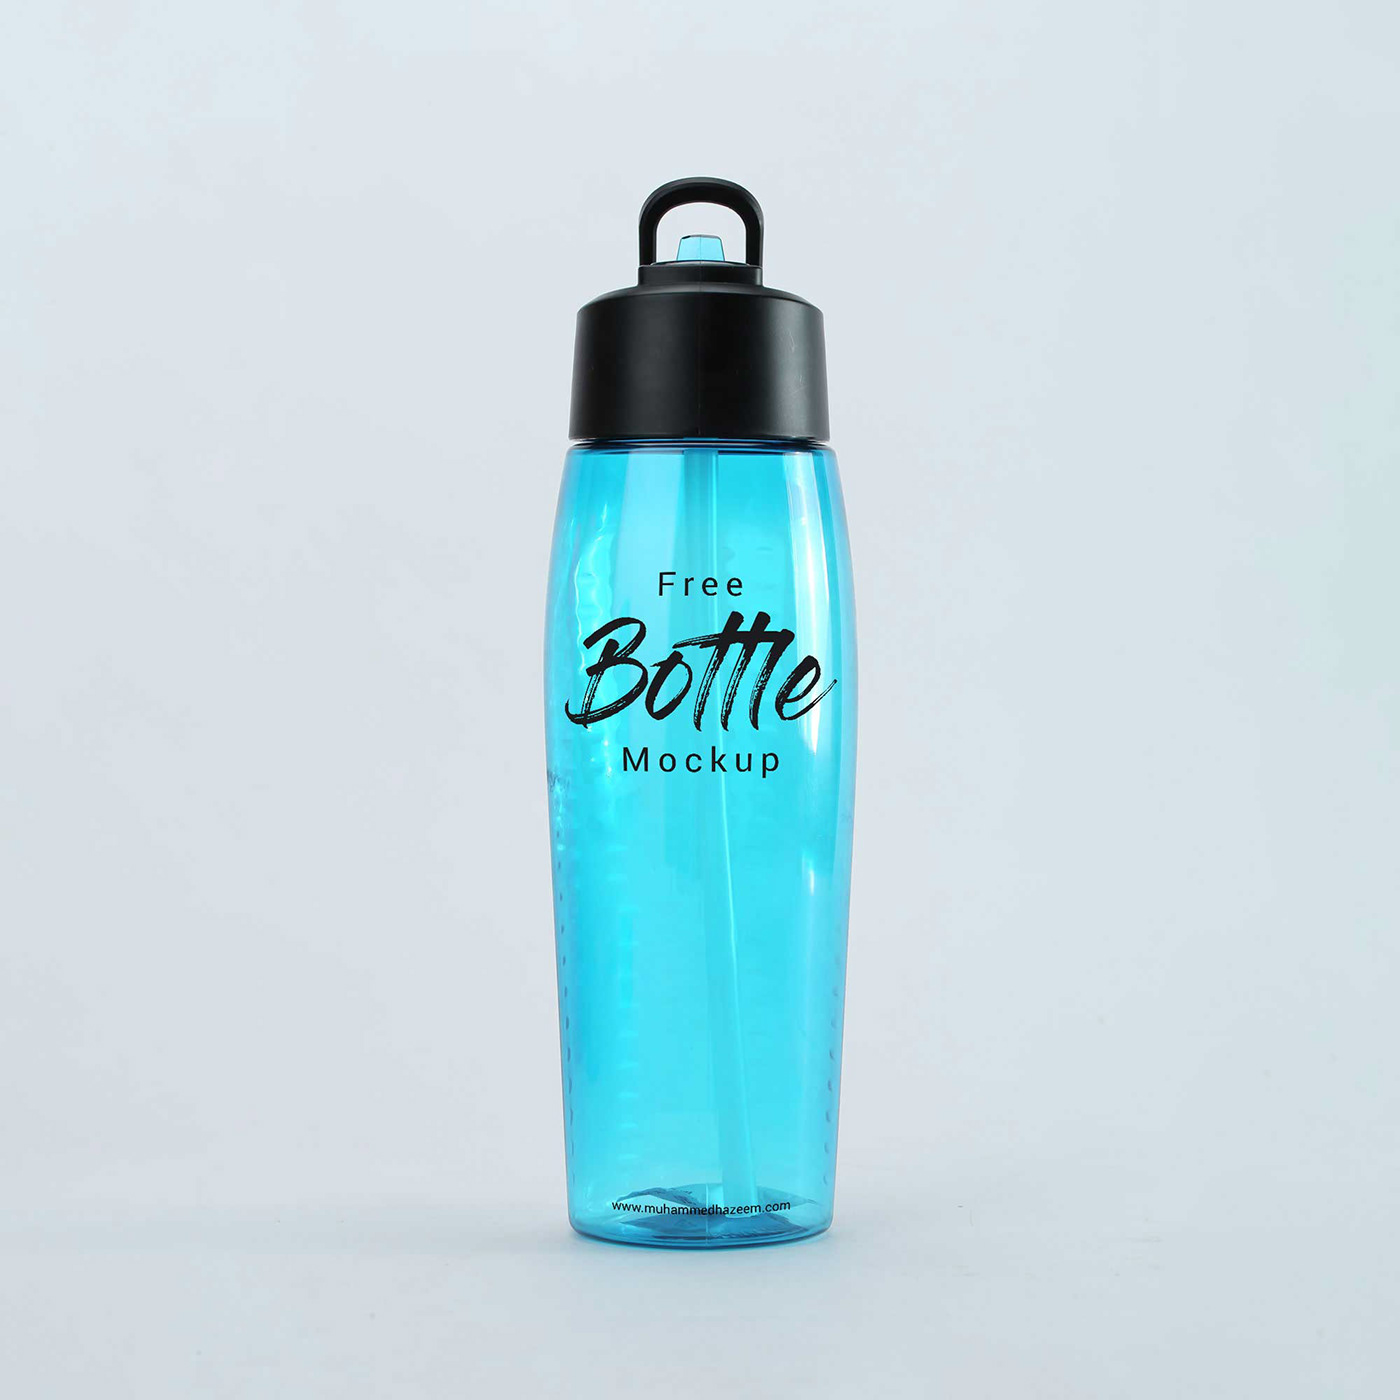 Sport Water Bottle MockUp PSD - Free Download